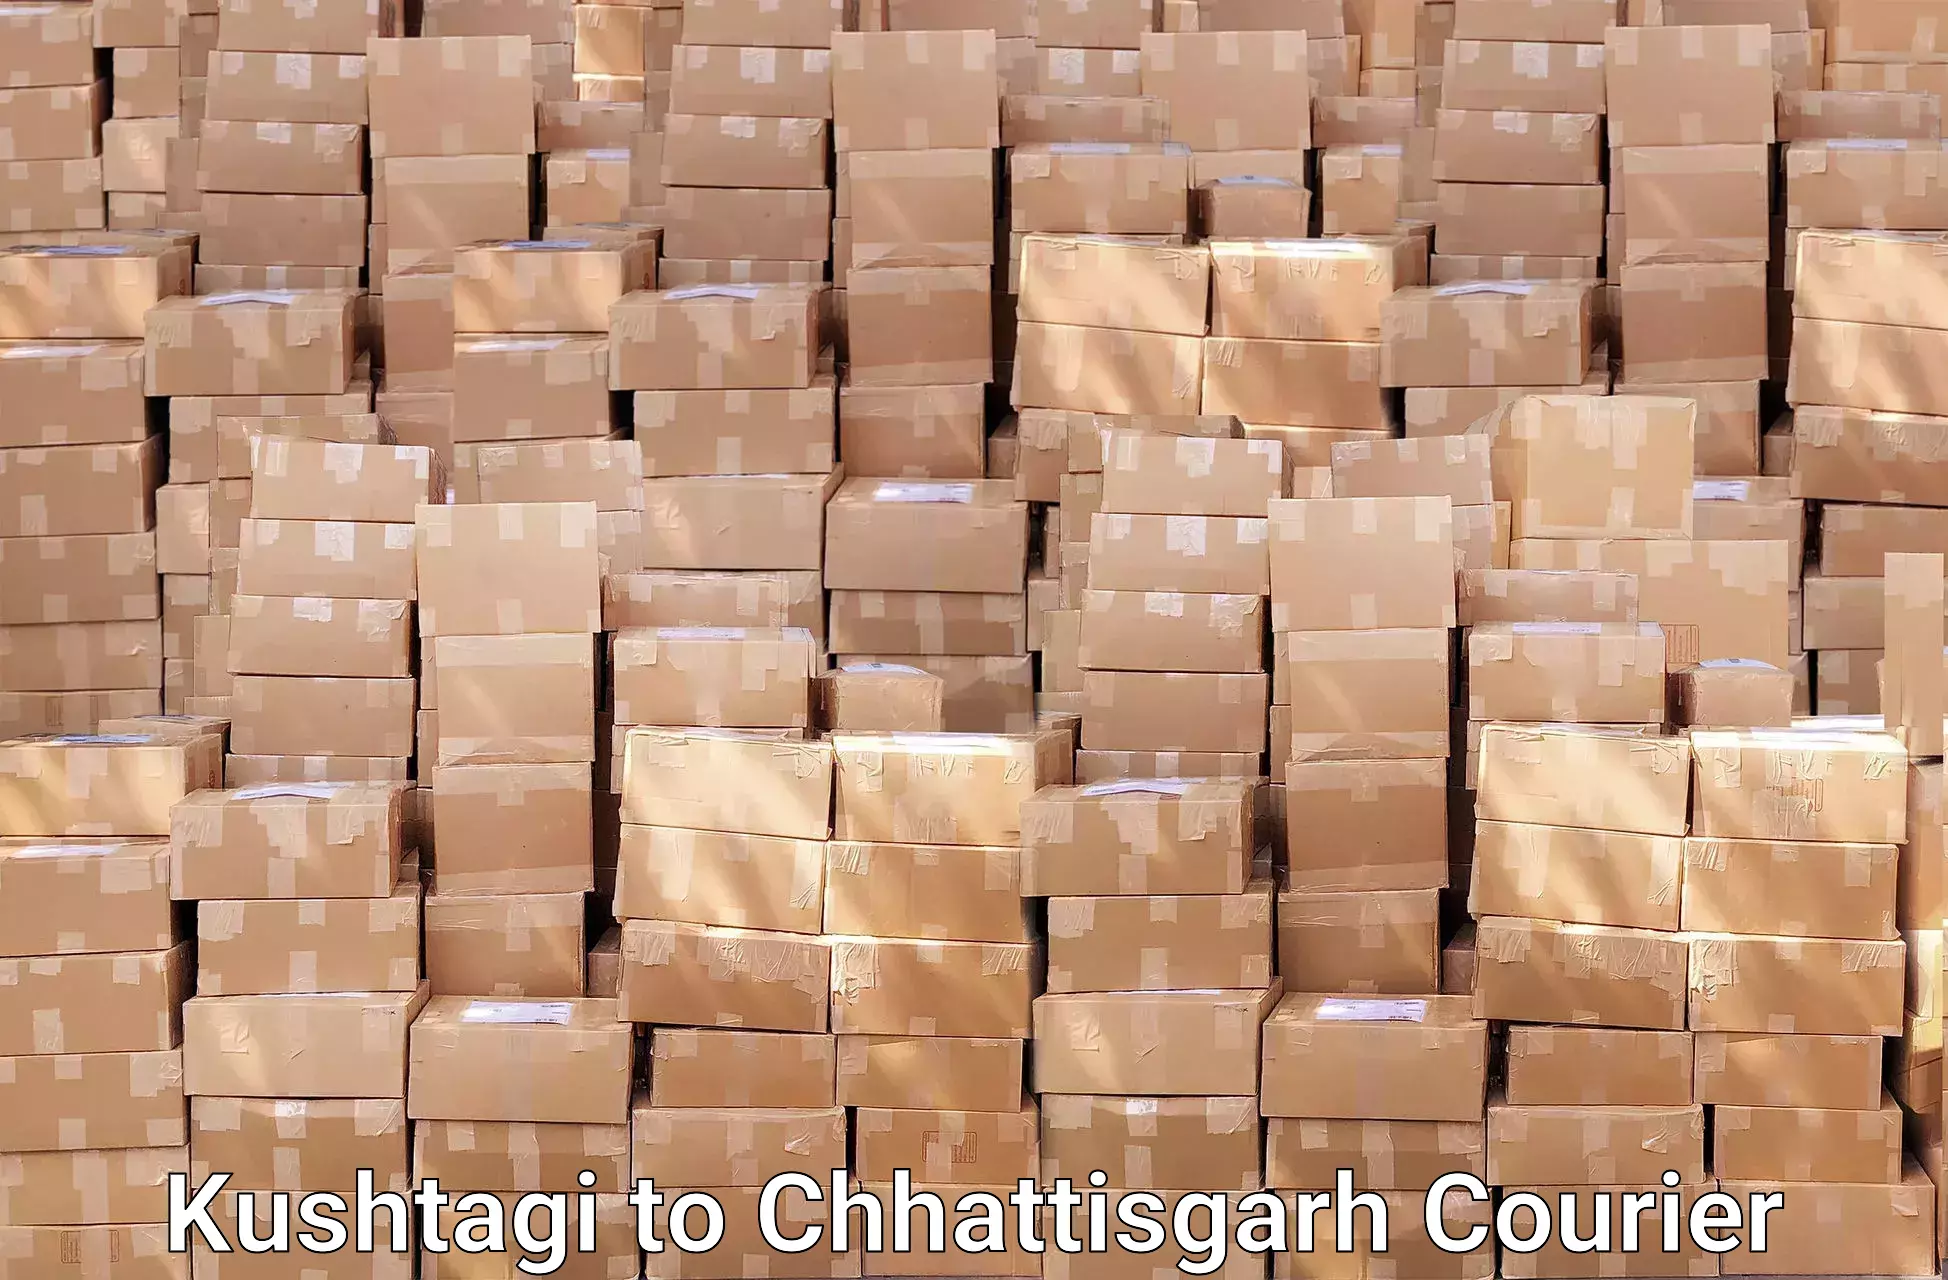 Efficient packing services Kushtagi to Chhattisgarh